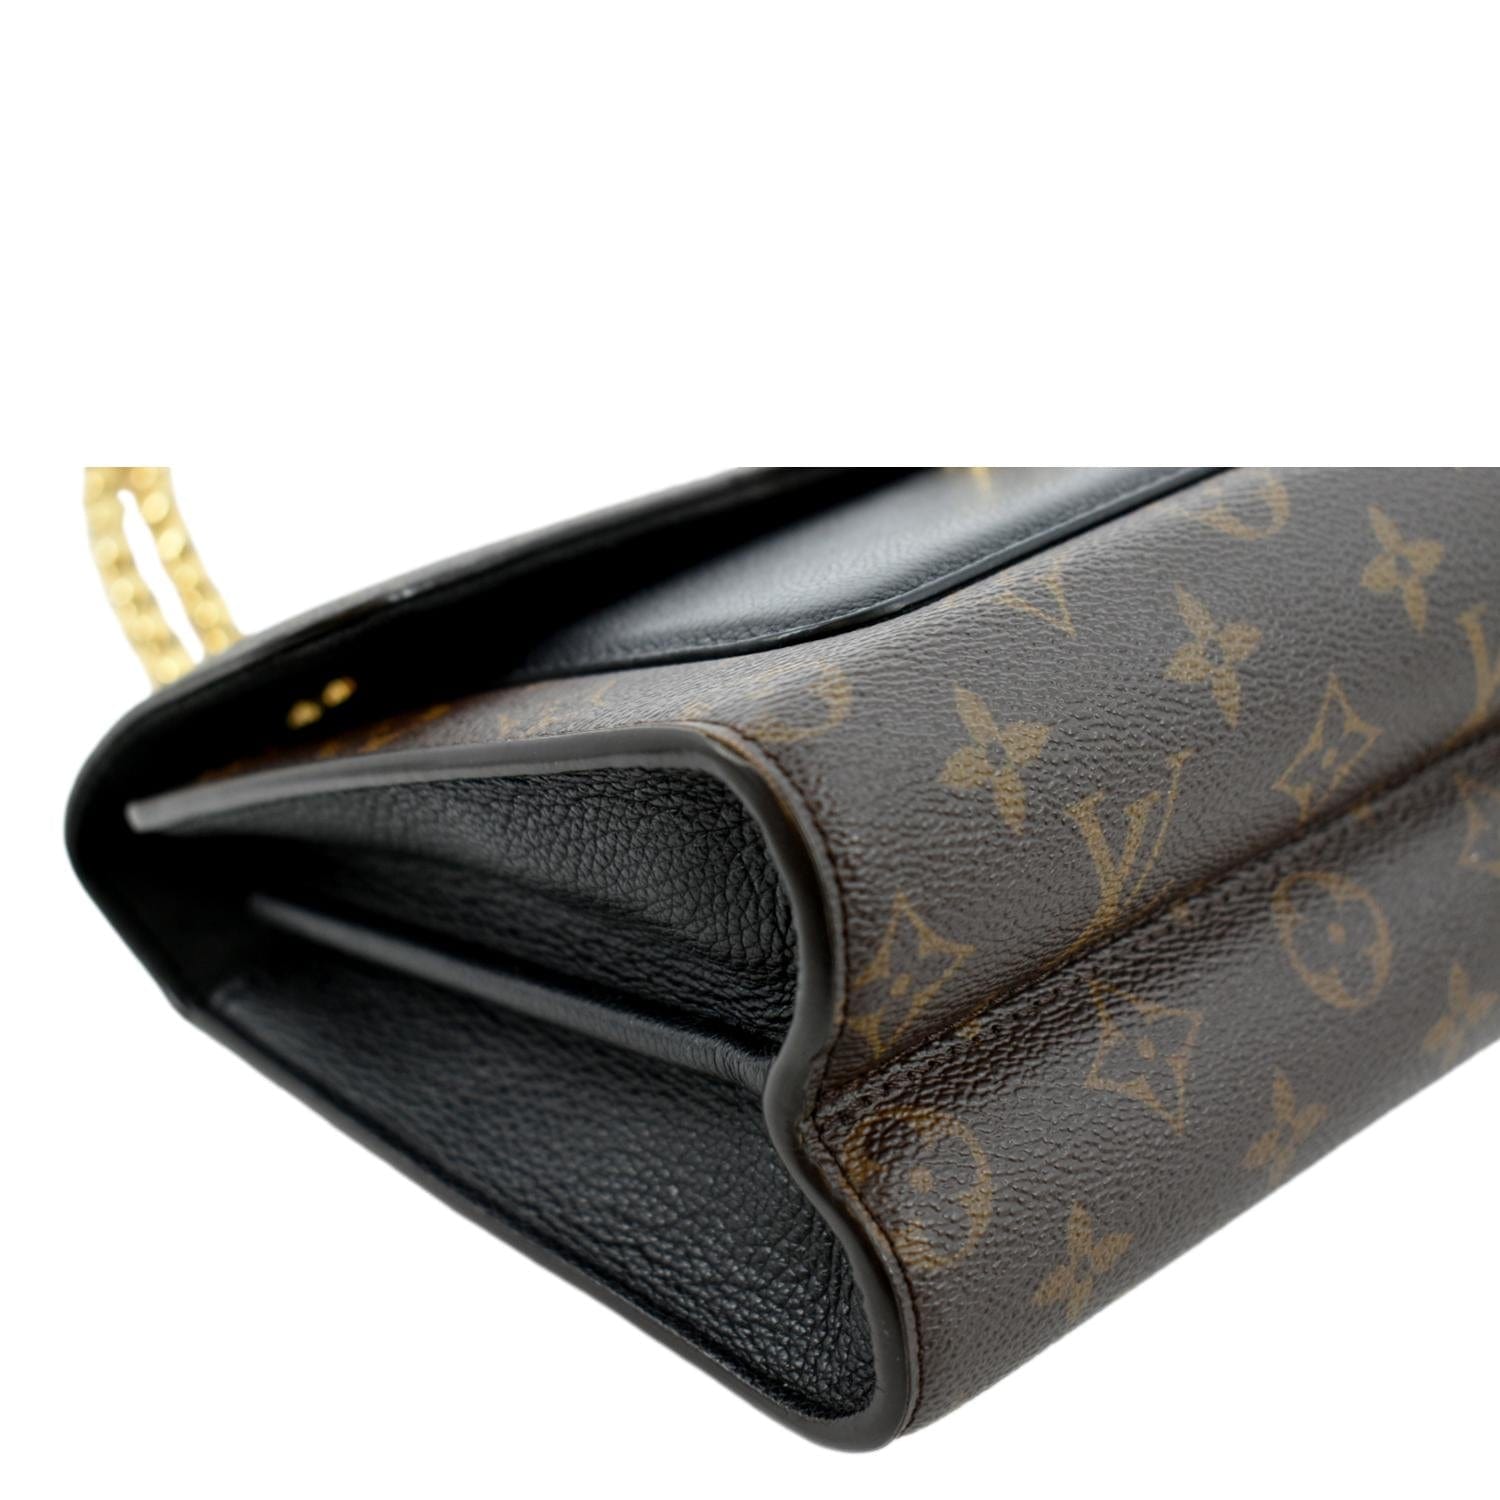 Sold at Auction: Louis Vuitton, Louis Vuitton - Victoire Handbag Monogram  Canvas and Leather Shoulder Bag